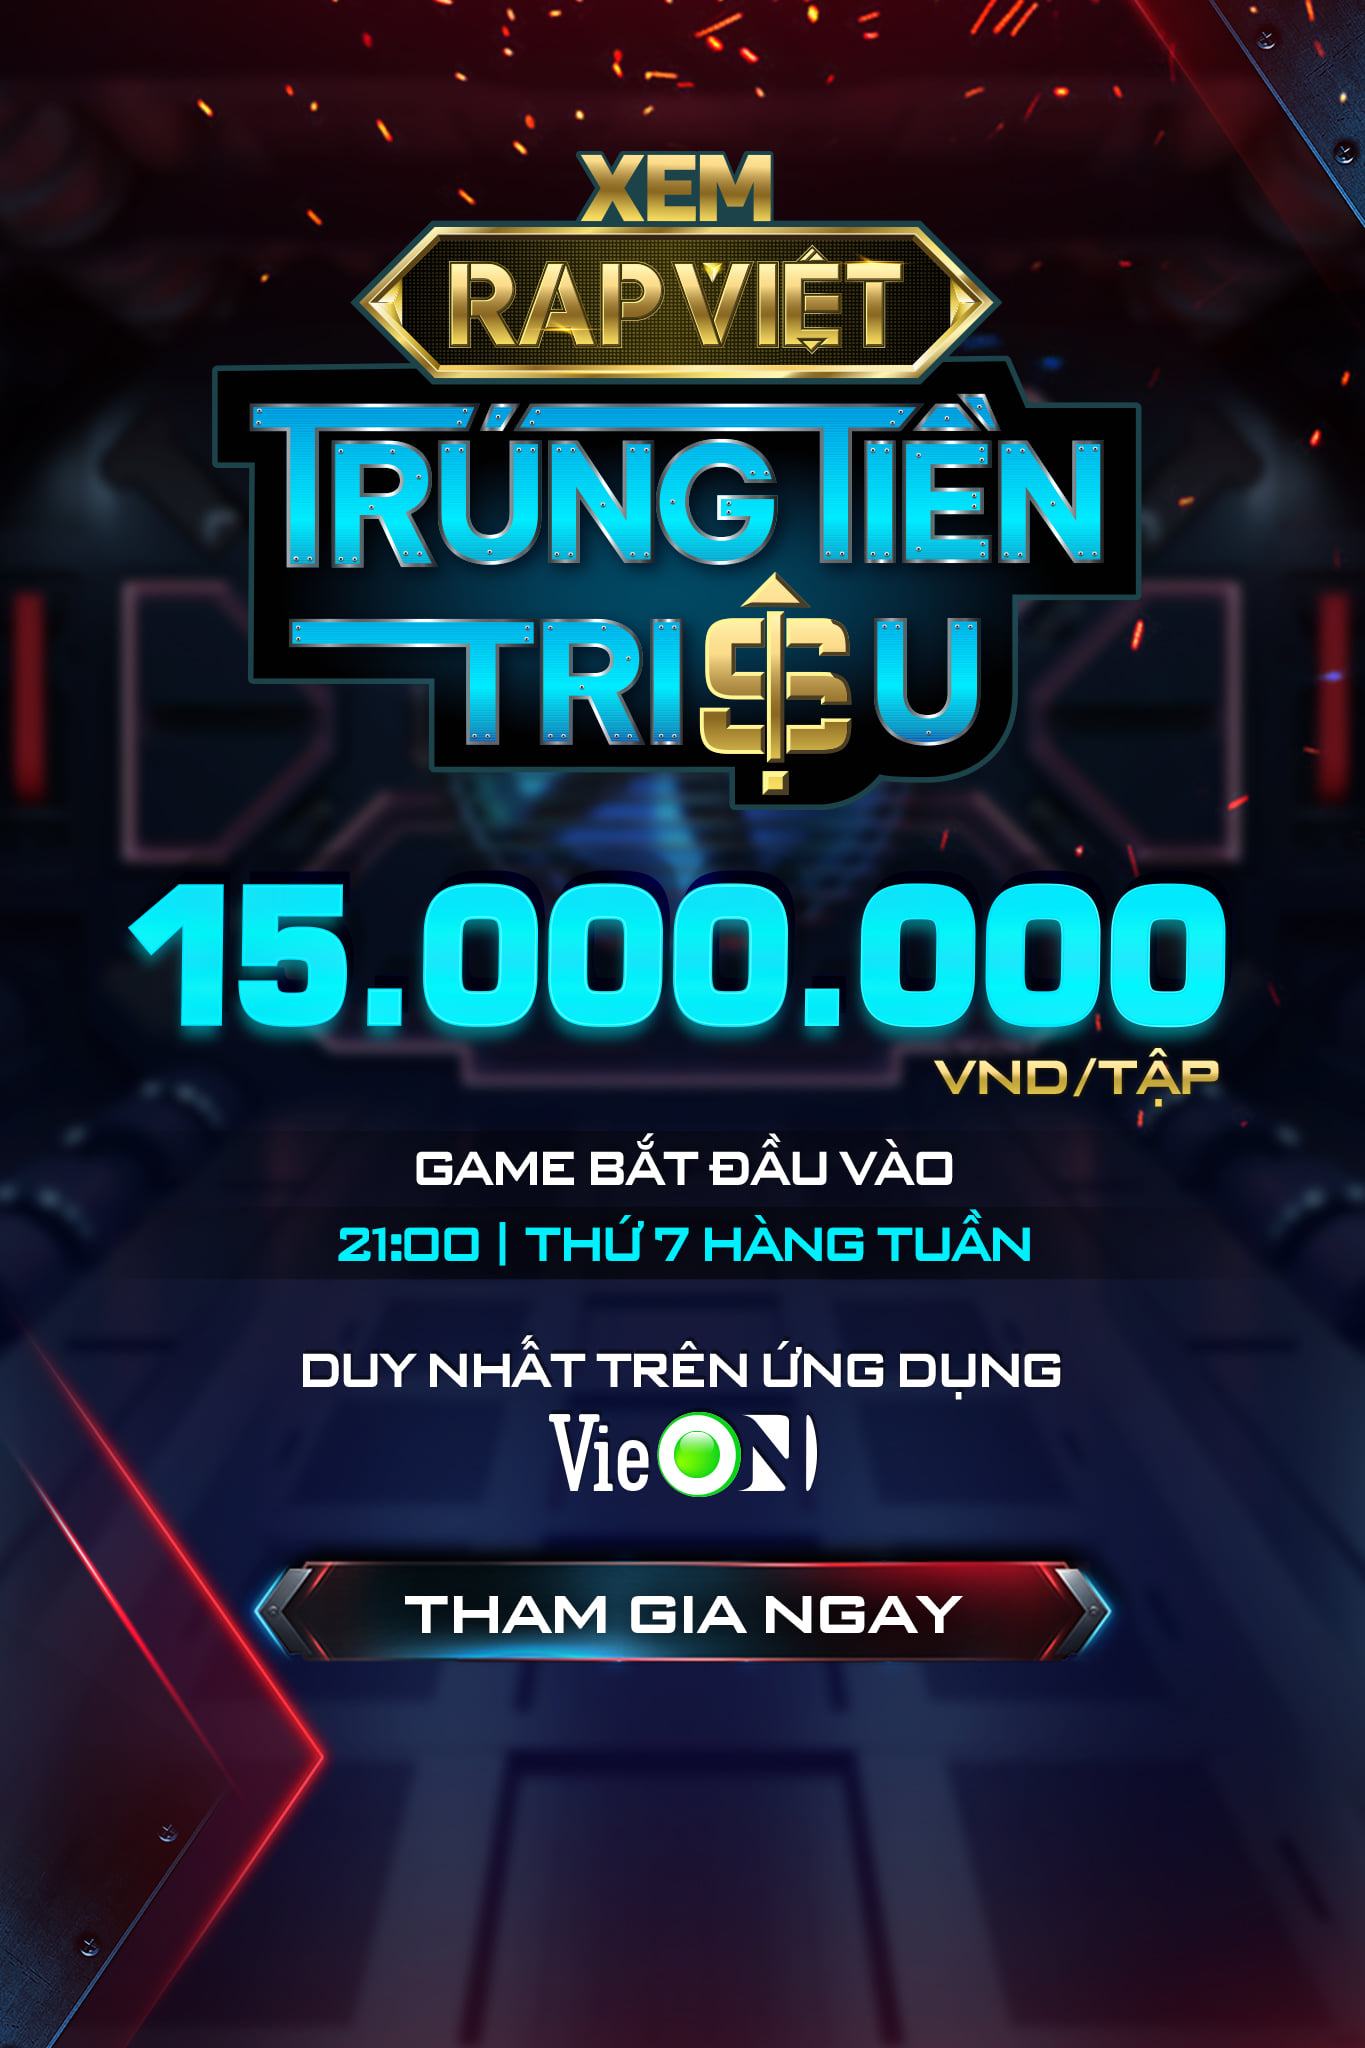 Trải nghiệm có 1-0-2 chỉ có tại VieON: Thưởng thức Rap Việt mùa 2 trúng tiền 15 triệu